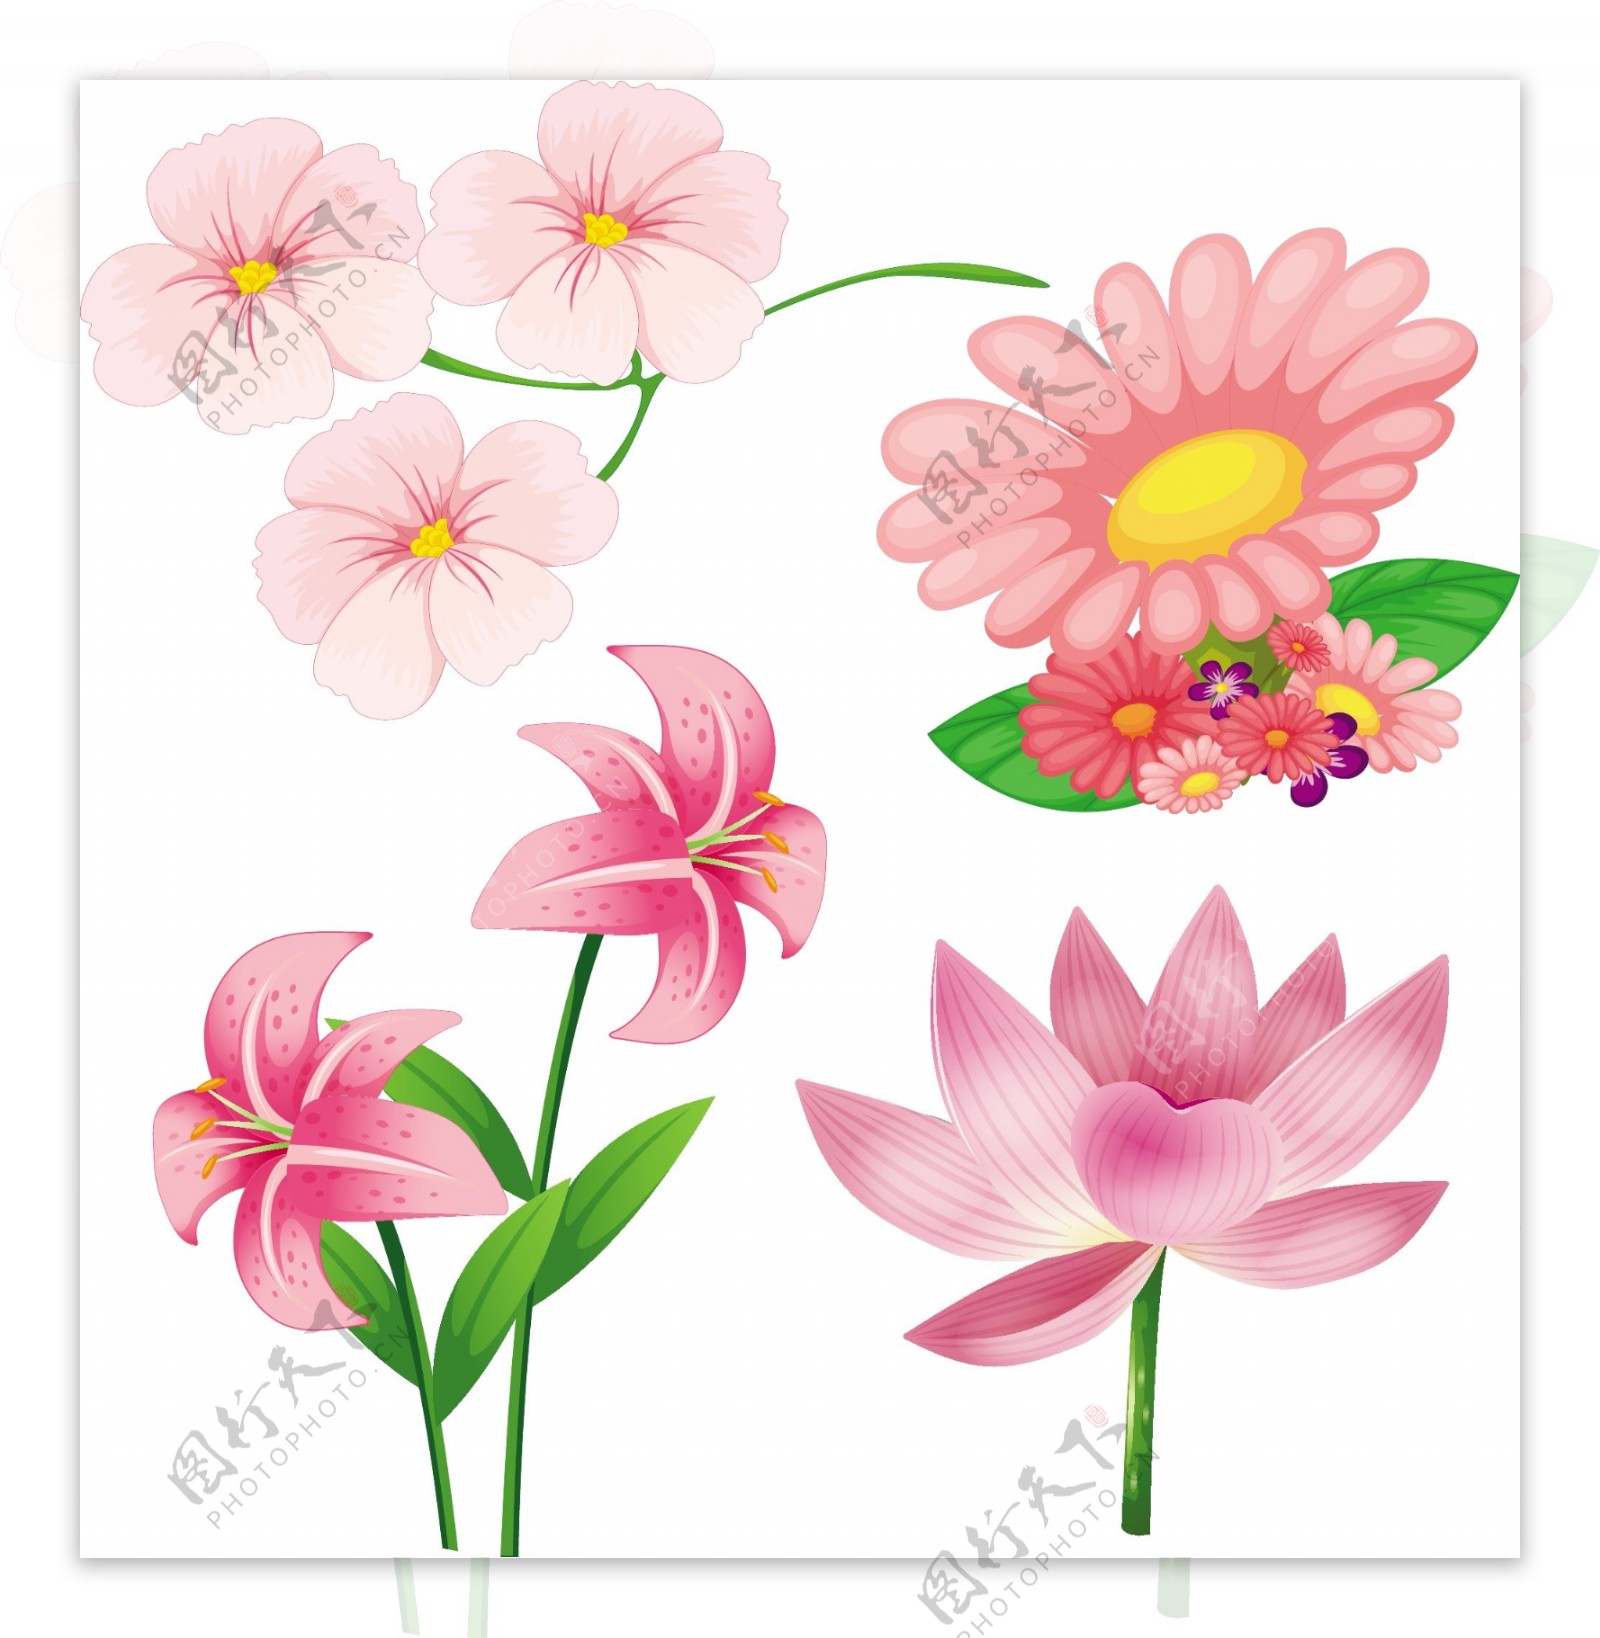 不同的粉红色的花朵插画矢量素材